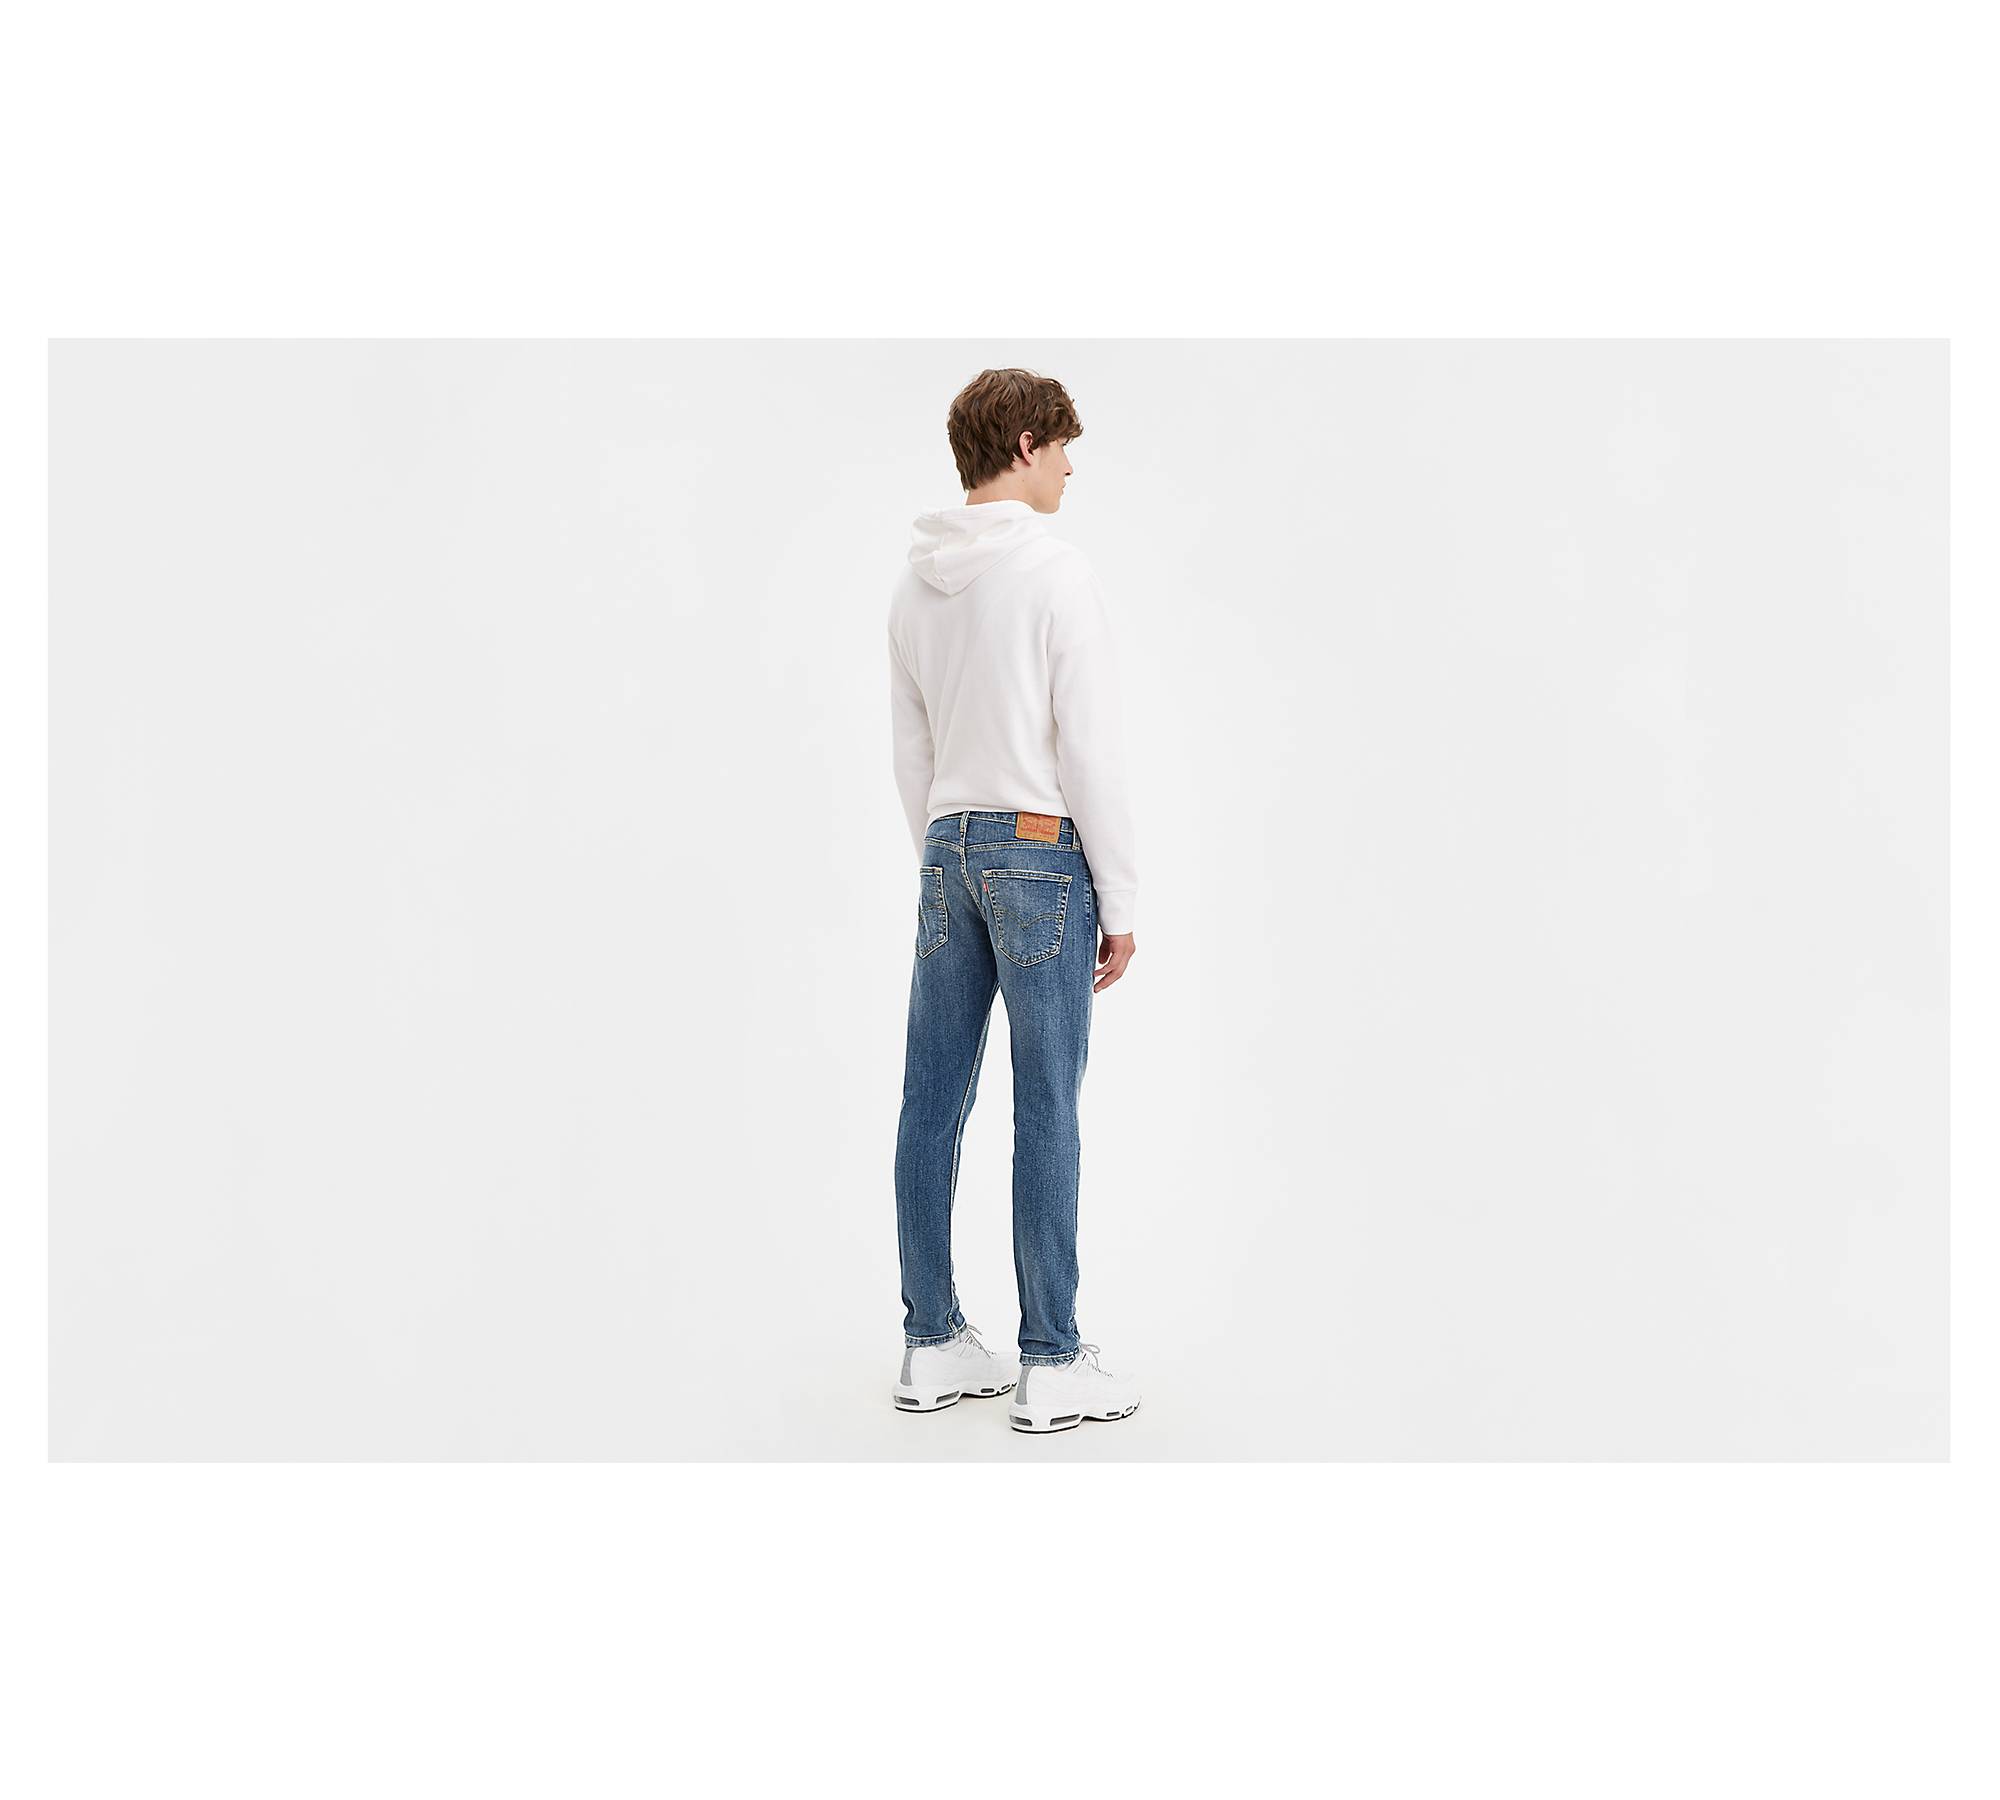 512™ Slim Taper Levi's® Flex Men's Jeans - Medium Wash